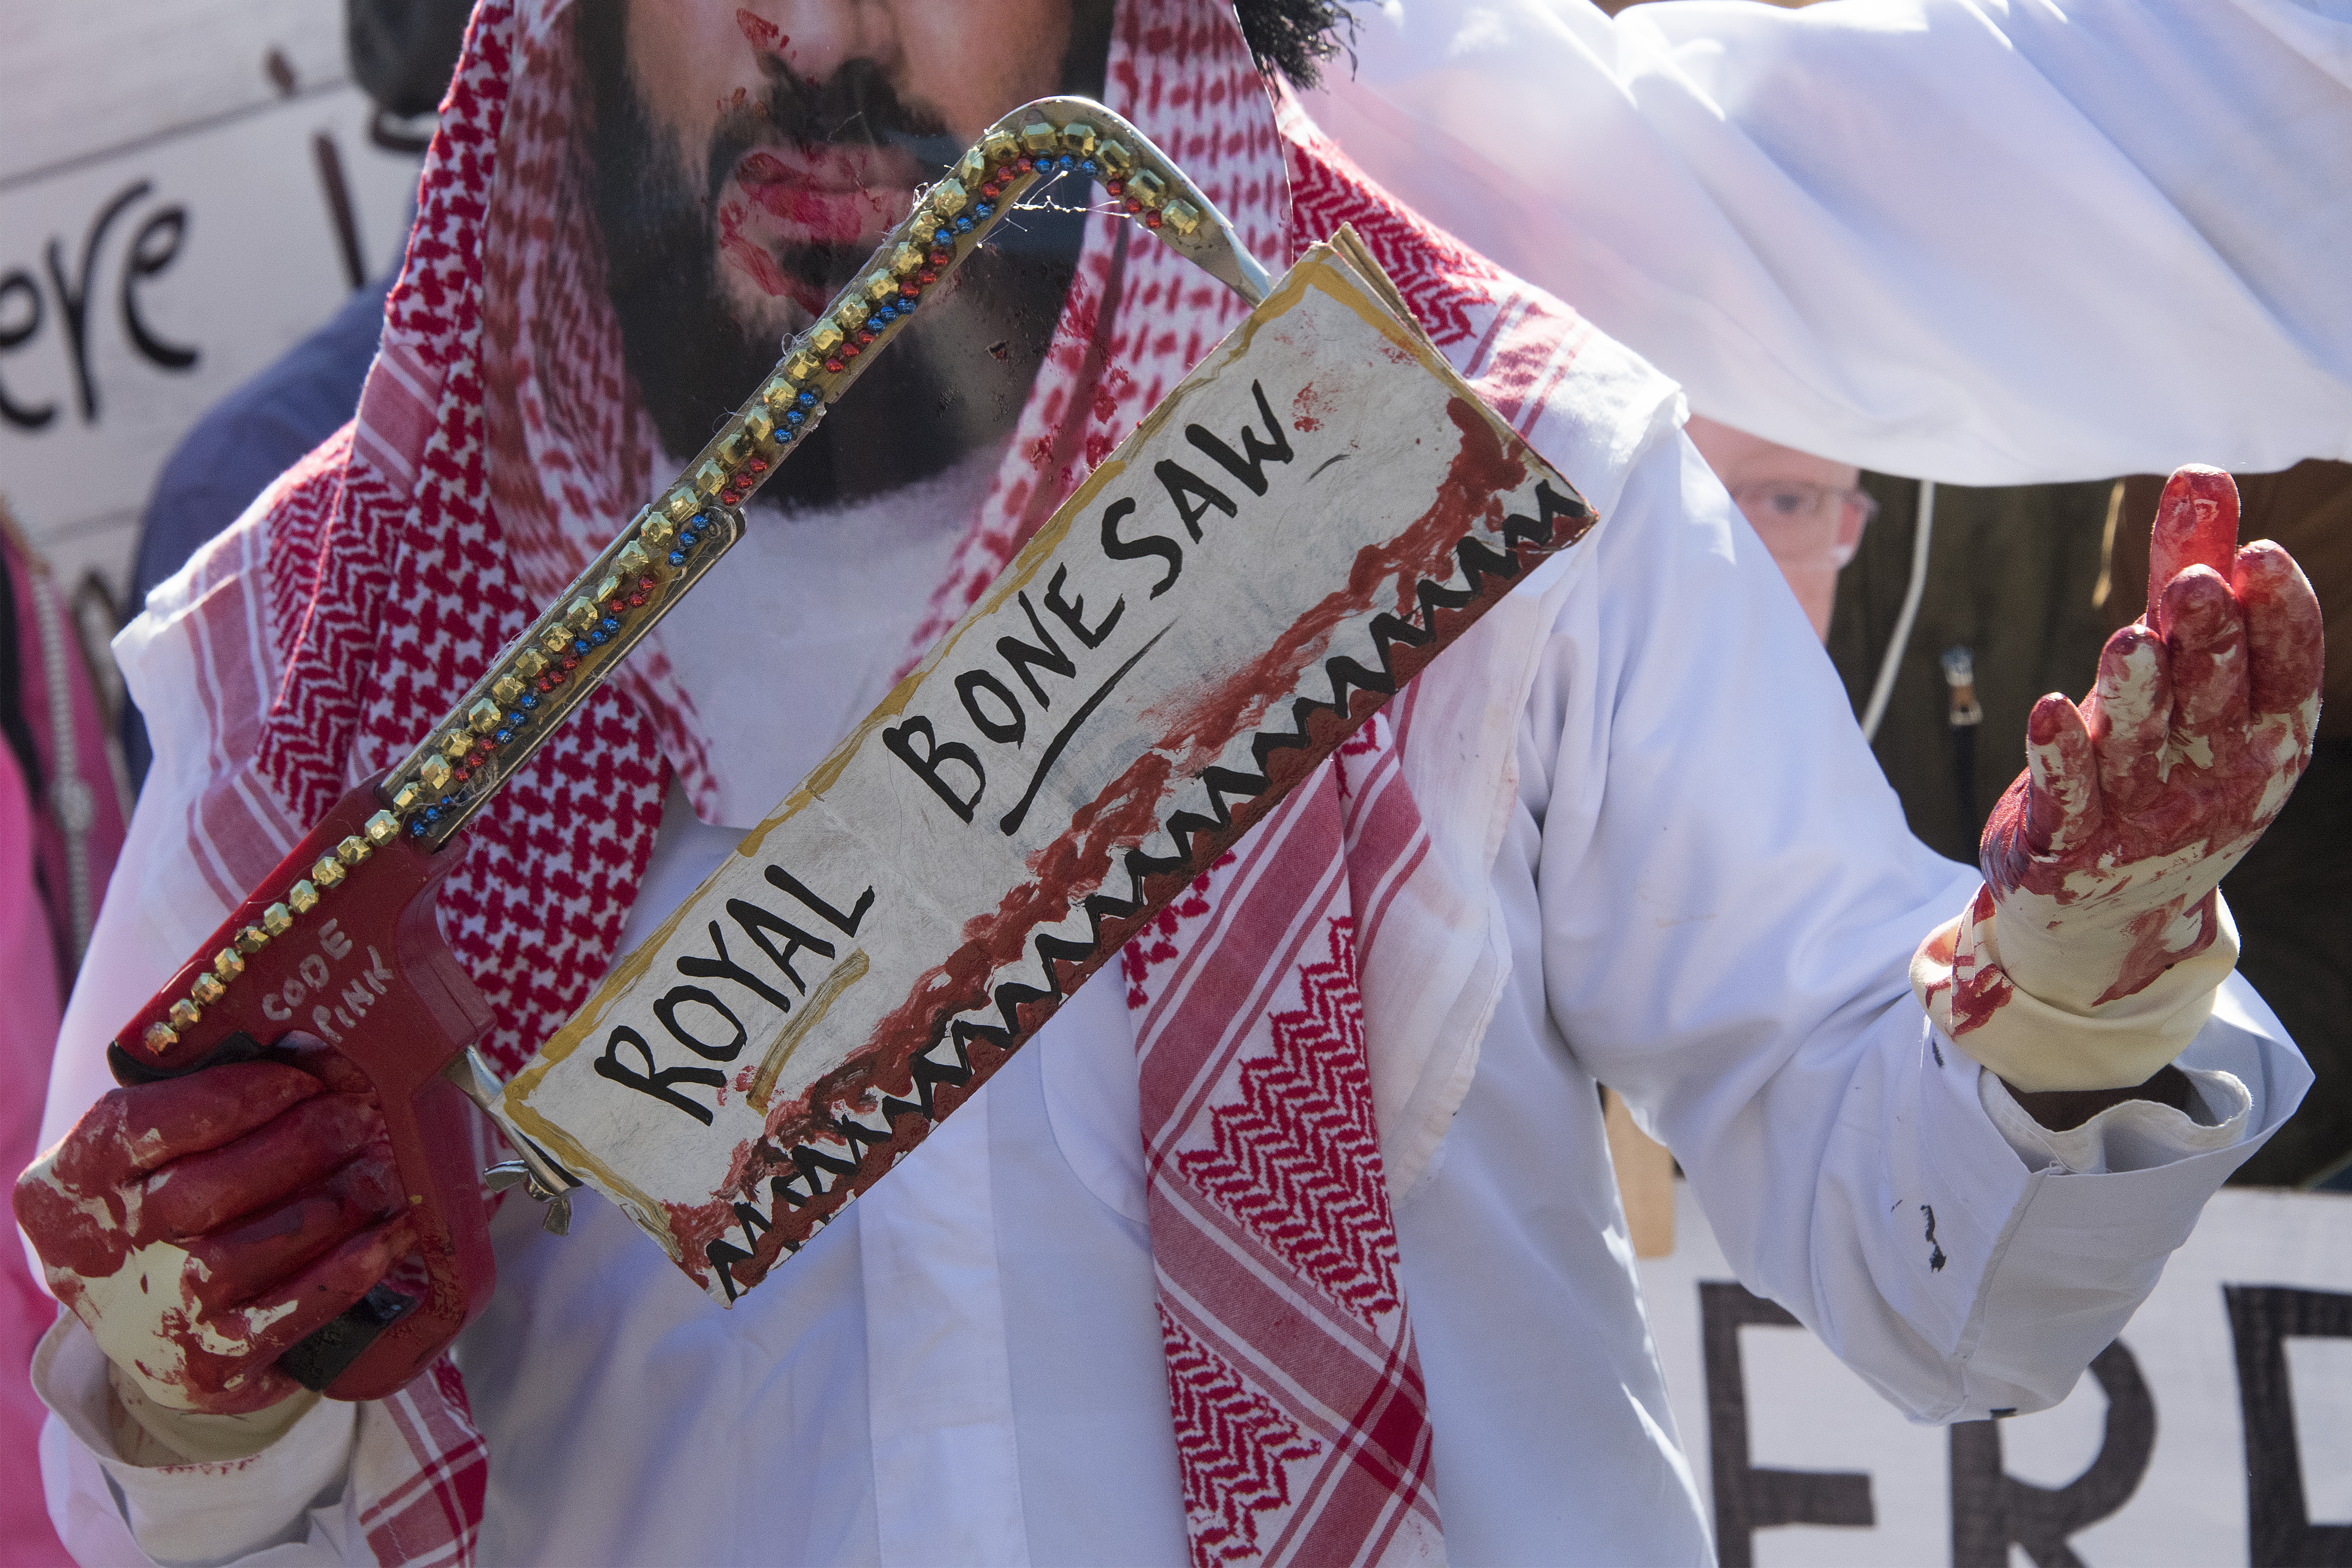 Infobae: Cómo es por dentro Arabia Saudita, el régimen que descuartizó a un periodista en un consulado